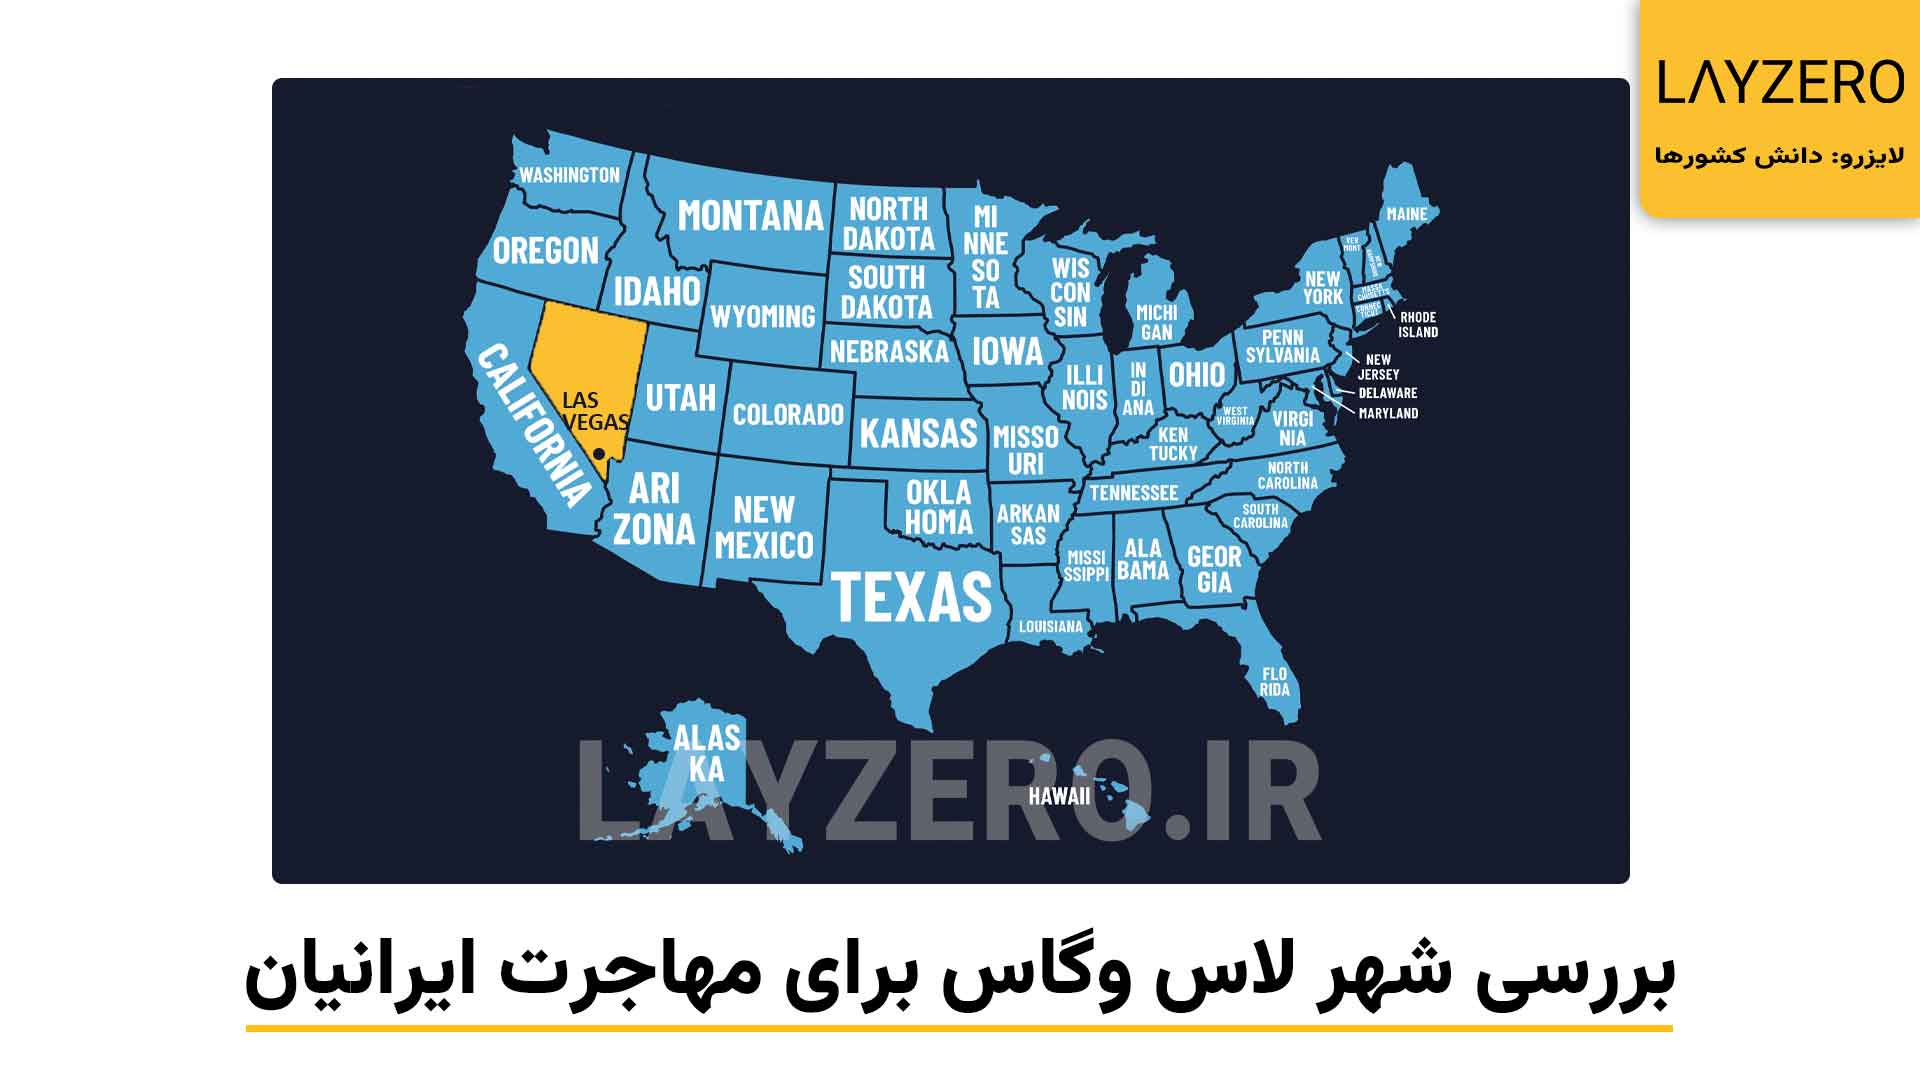 عکسی از موقعیت شهر لاس وگاس بر روی نقشه آمریکا، شهر لاس وگاس برای برندگان ایرانی لاتاری